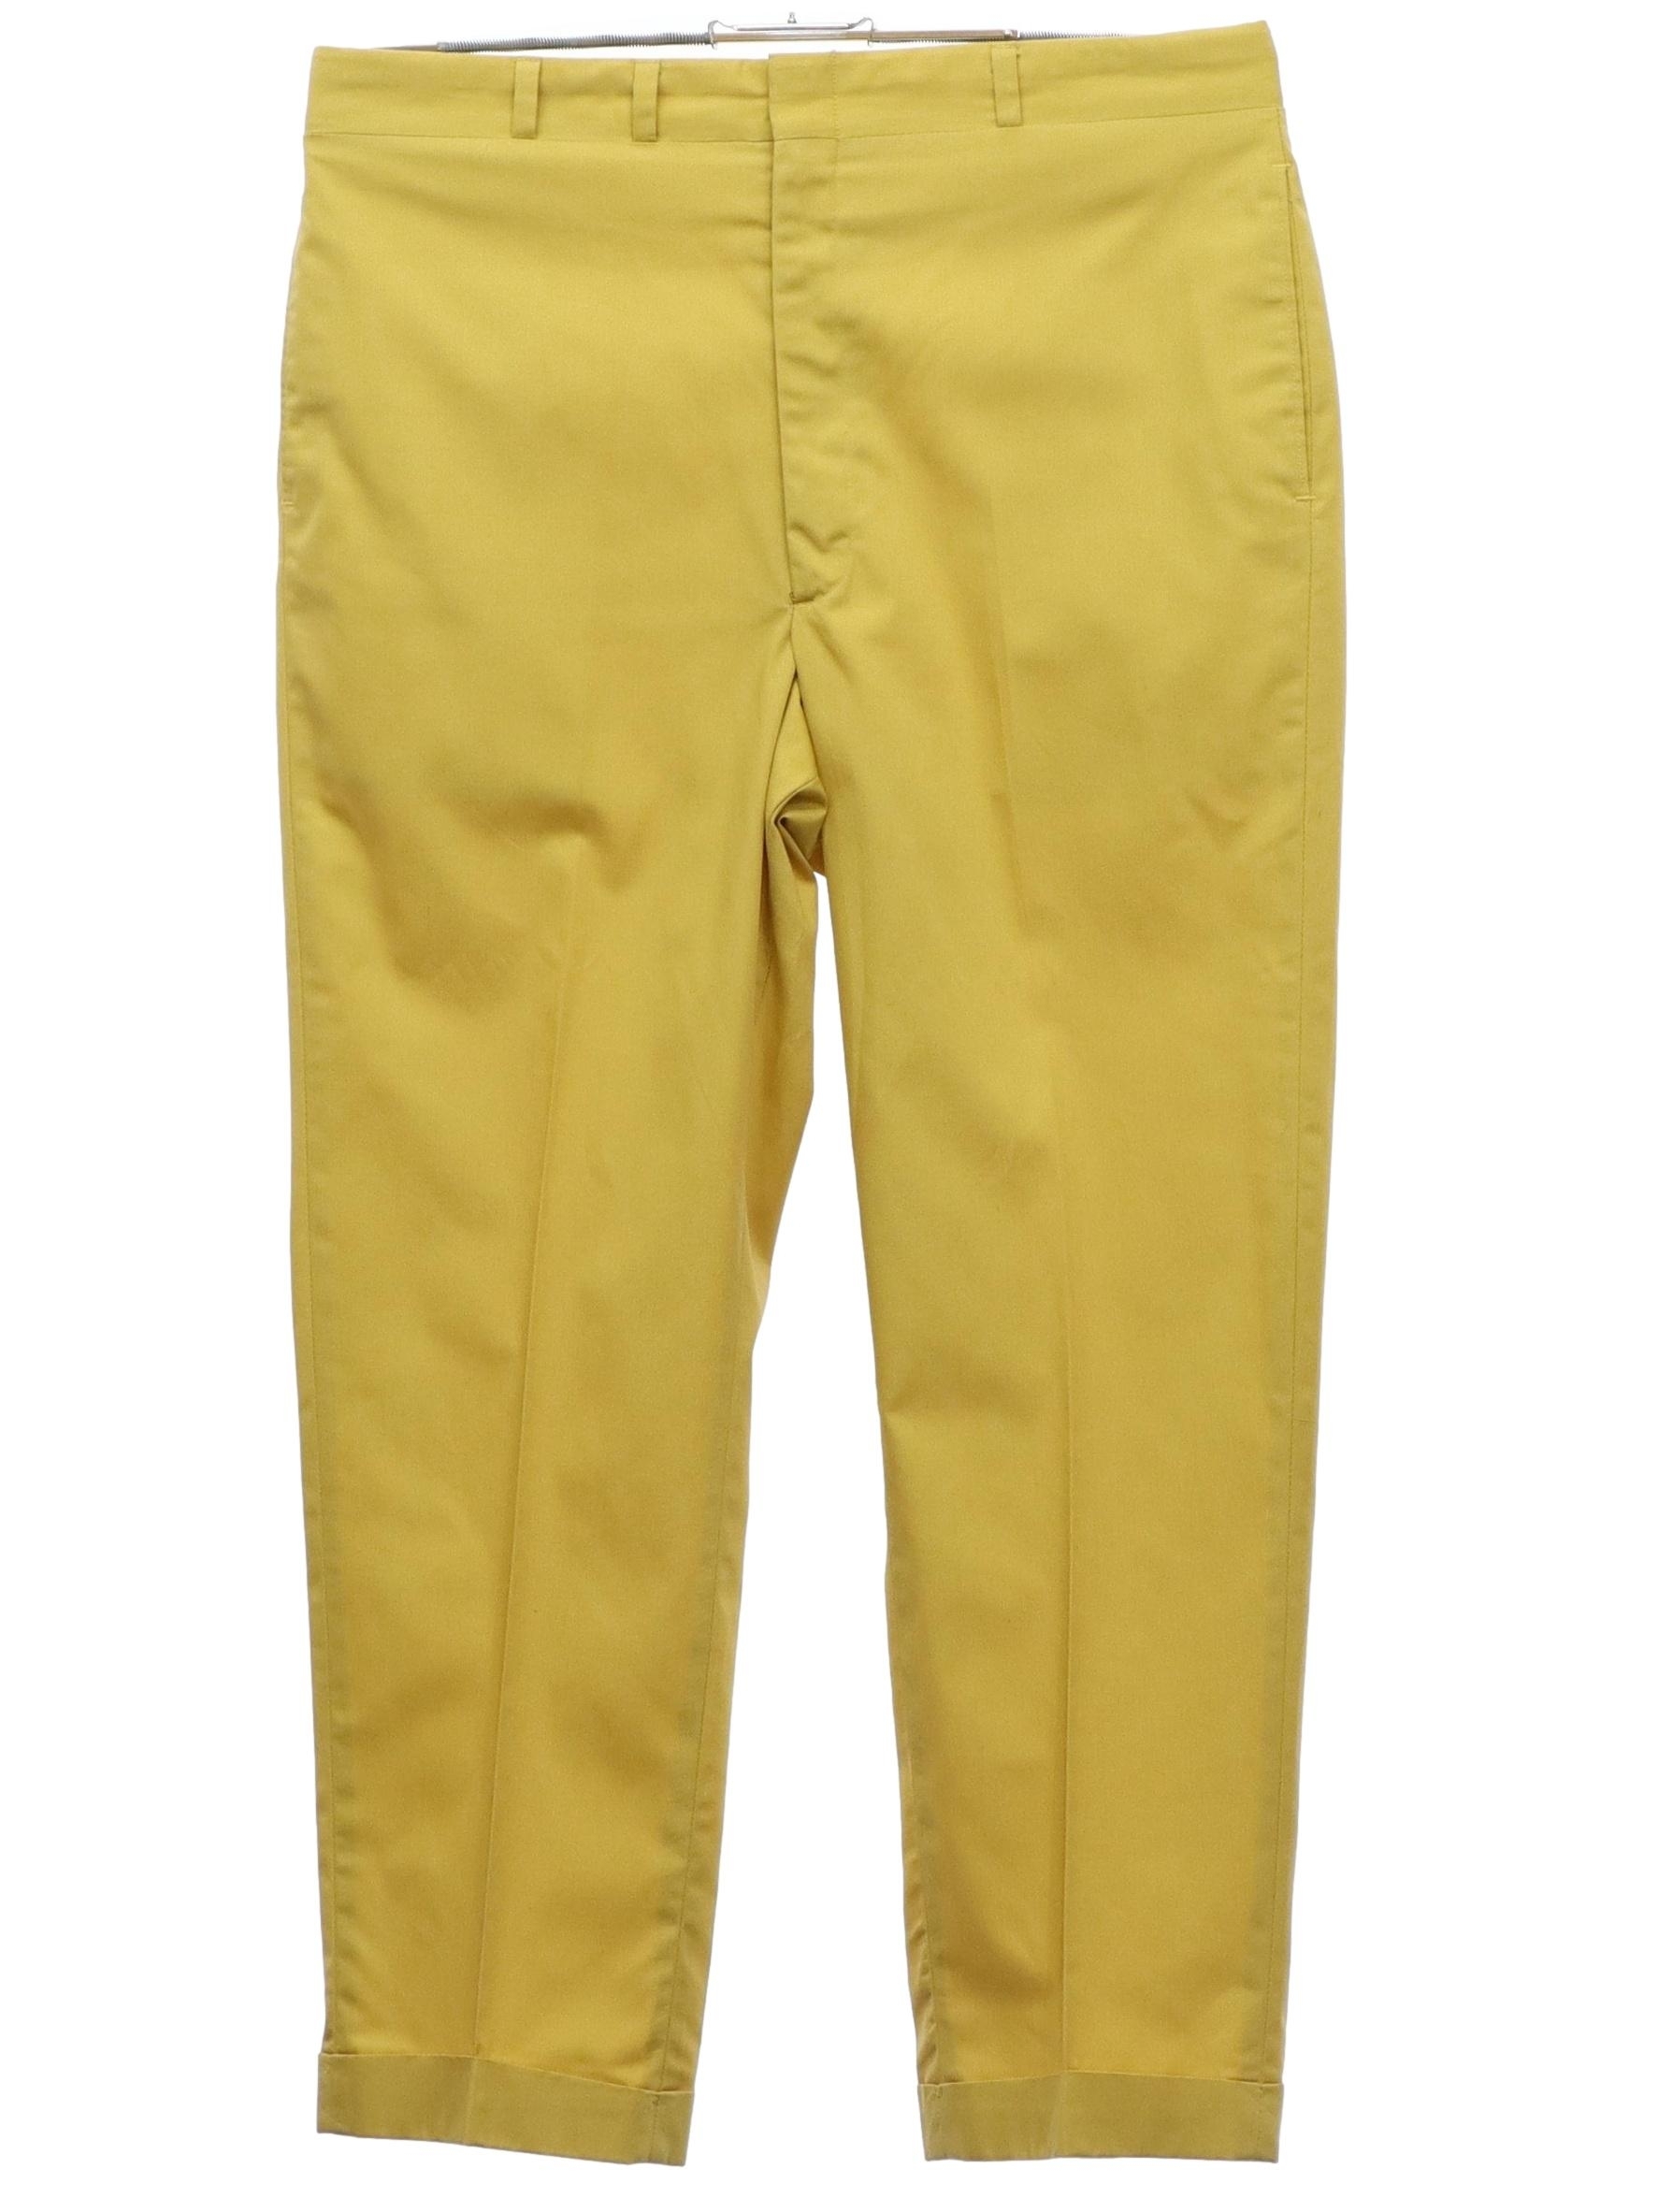 Mens Bell Bottom Pants Retro 60s 70s Flared Formal Dress Trousers Slim  Business | eBay